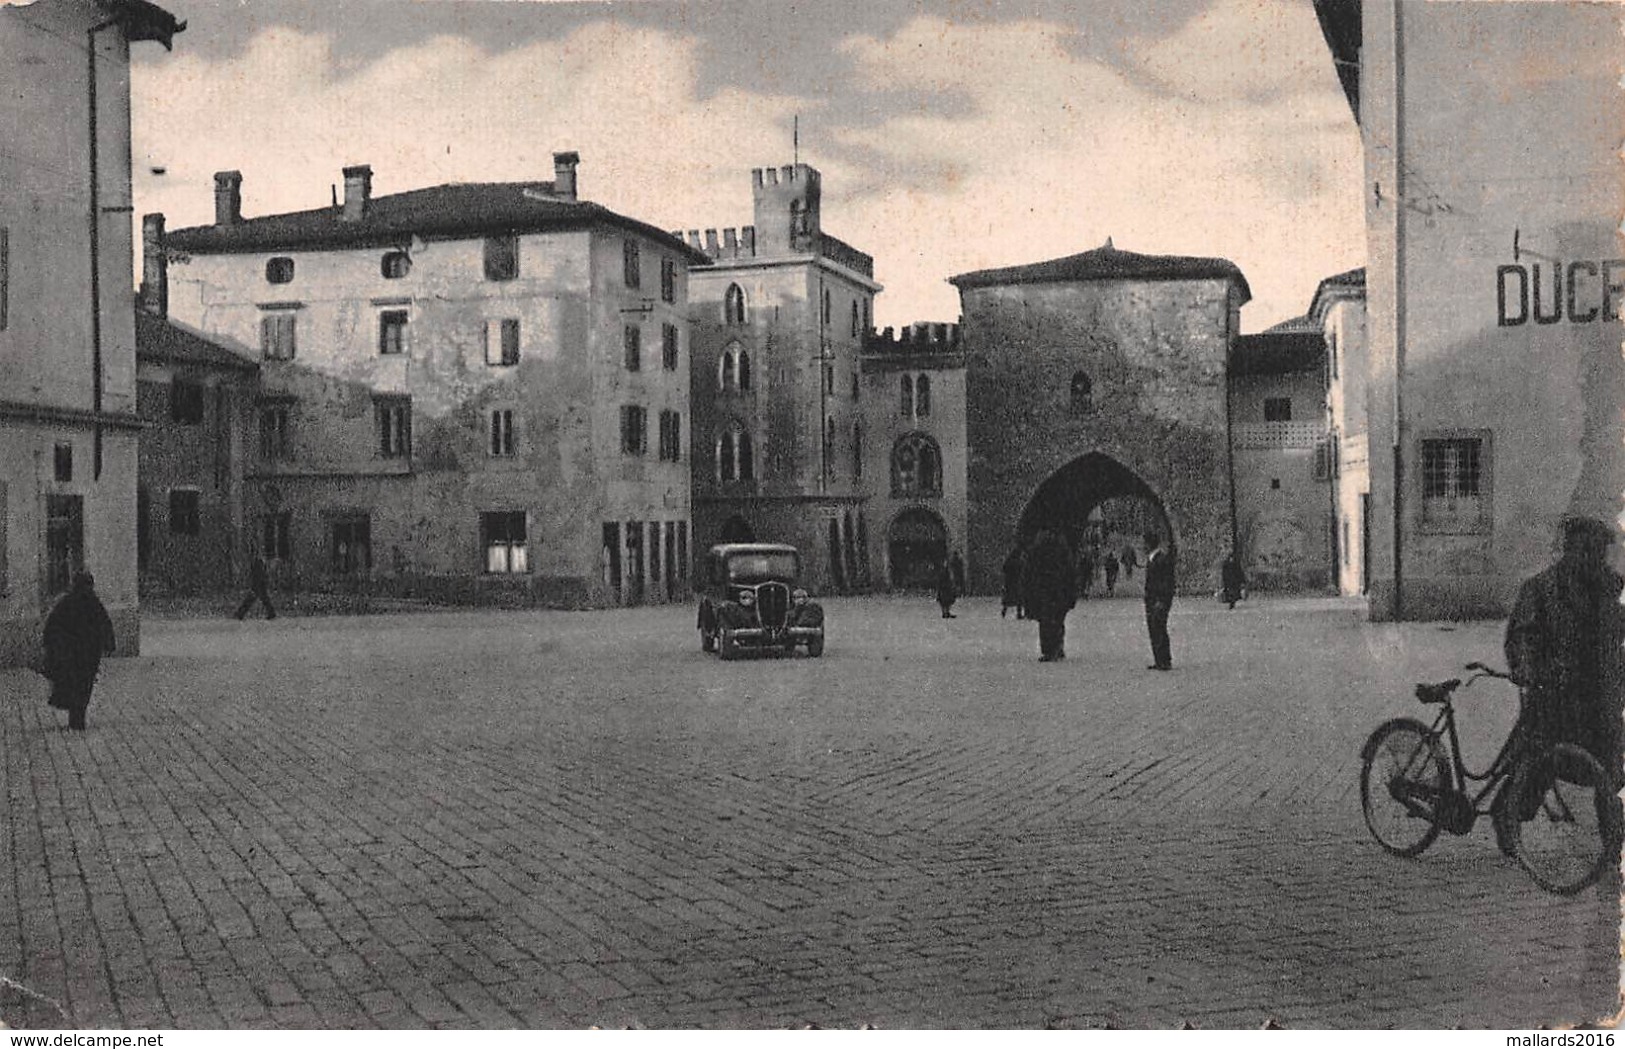 CIVIDALE ~ AN OLD POSTCARD #98726 - Udine